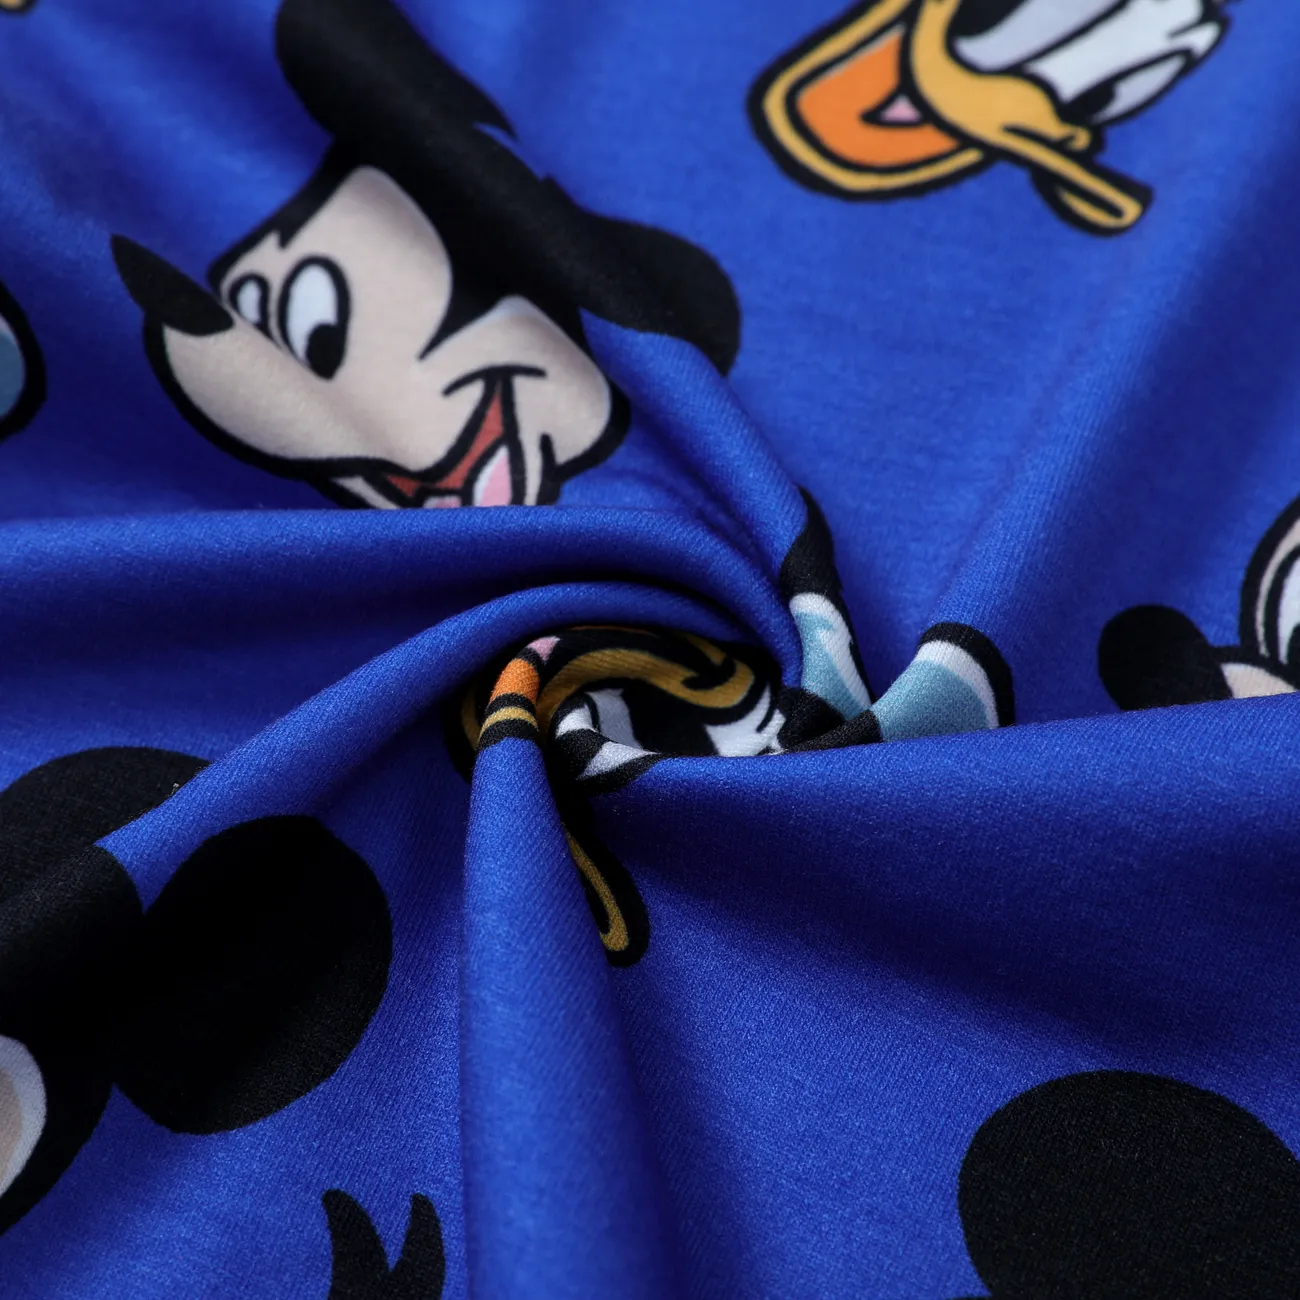 Disney Mickey and Friends 2 unidades Chico Trenza Infantil Conjuntos Azul big image 1